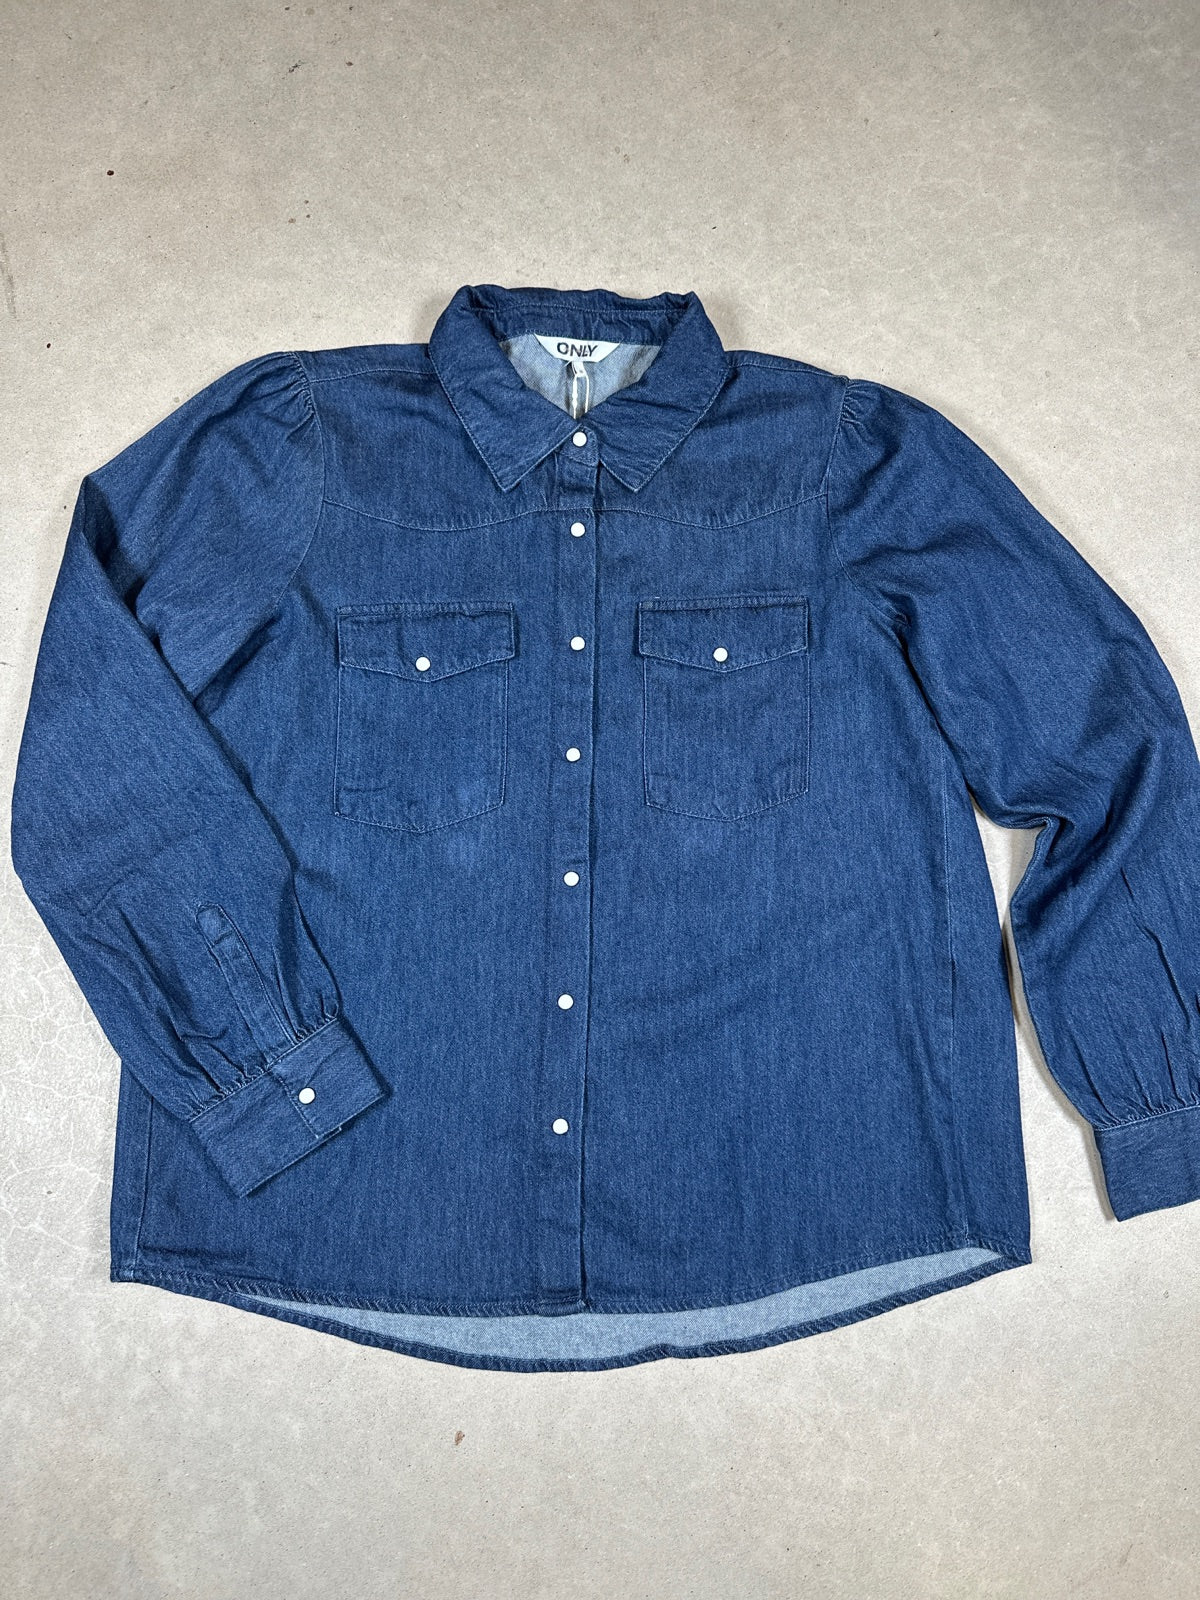 Onllinette Long Sleeve Shirt Dark Blue Denim